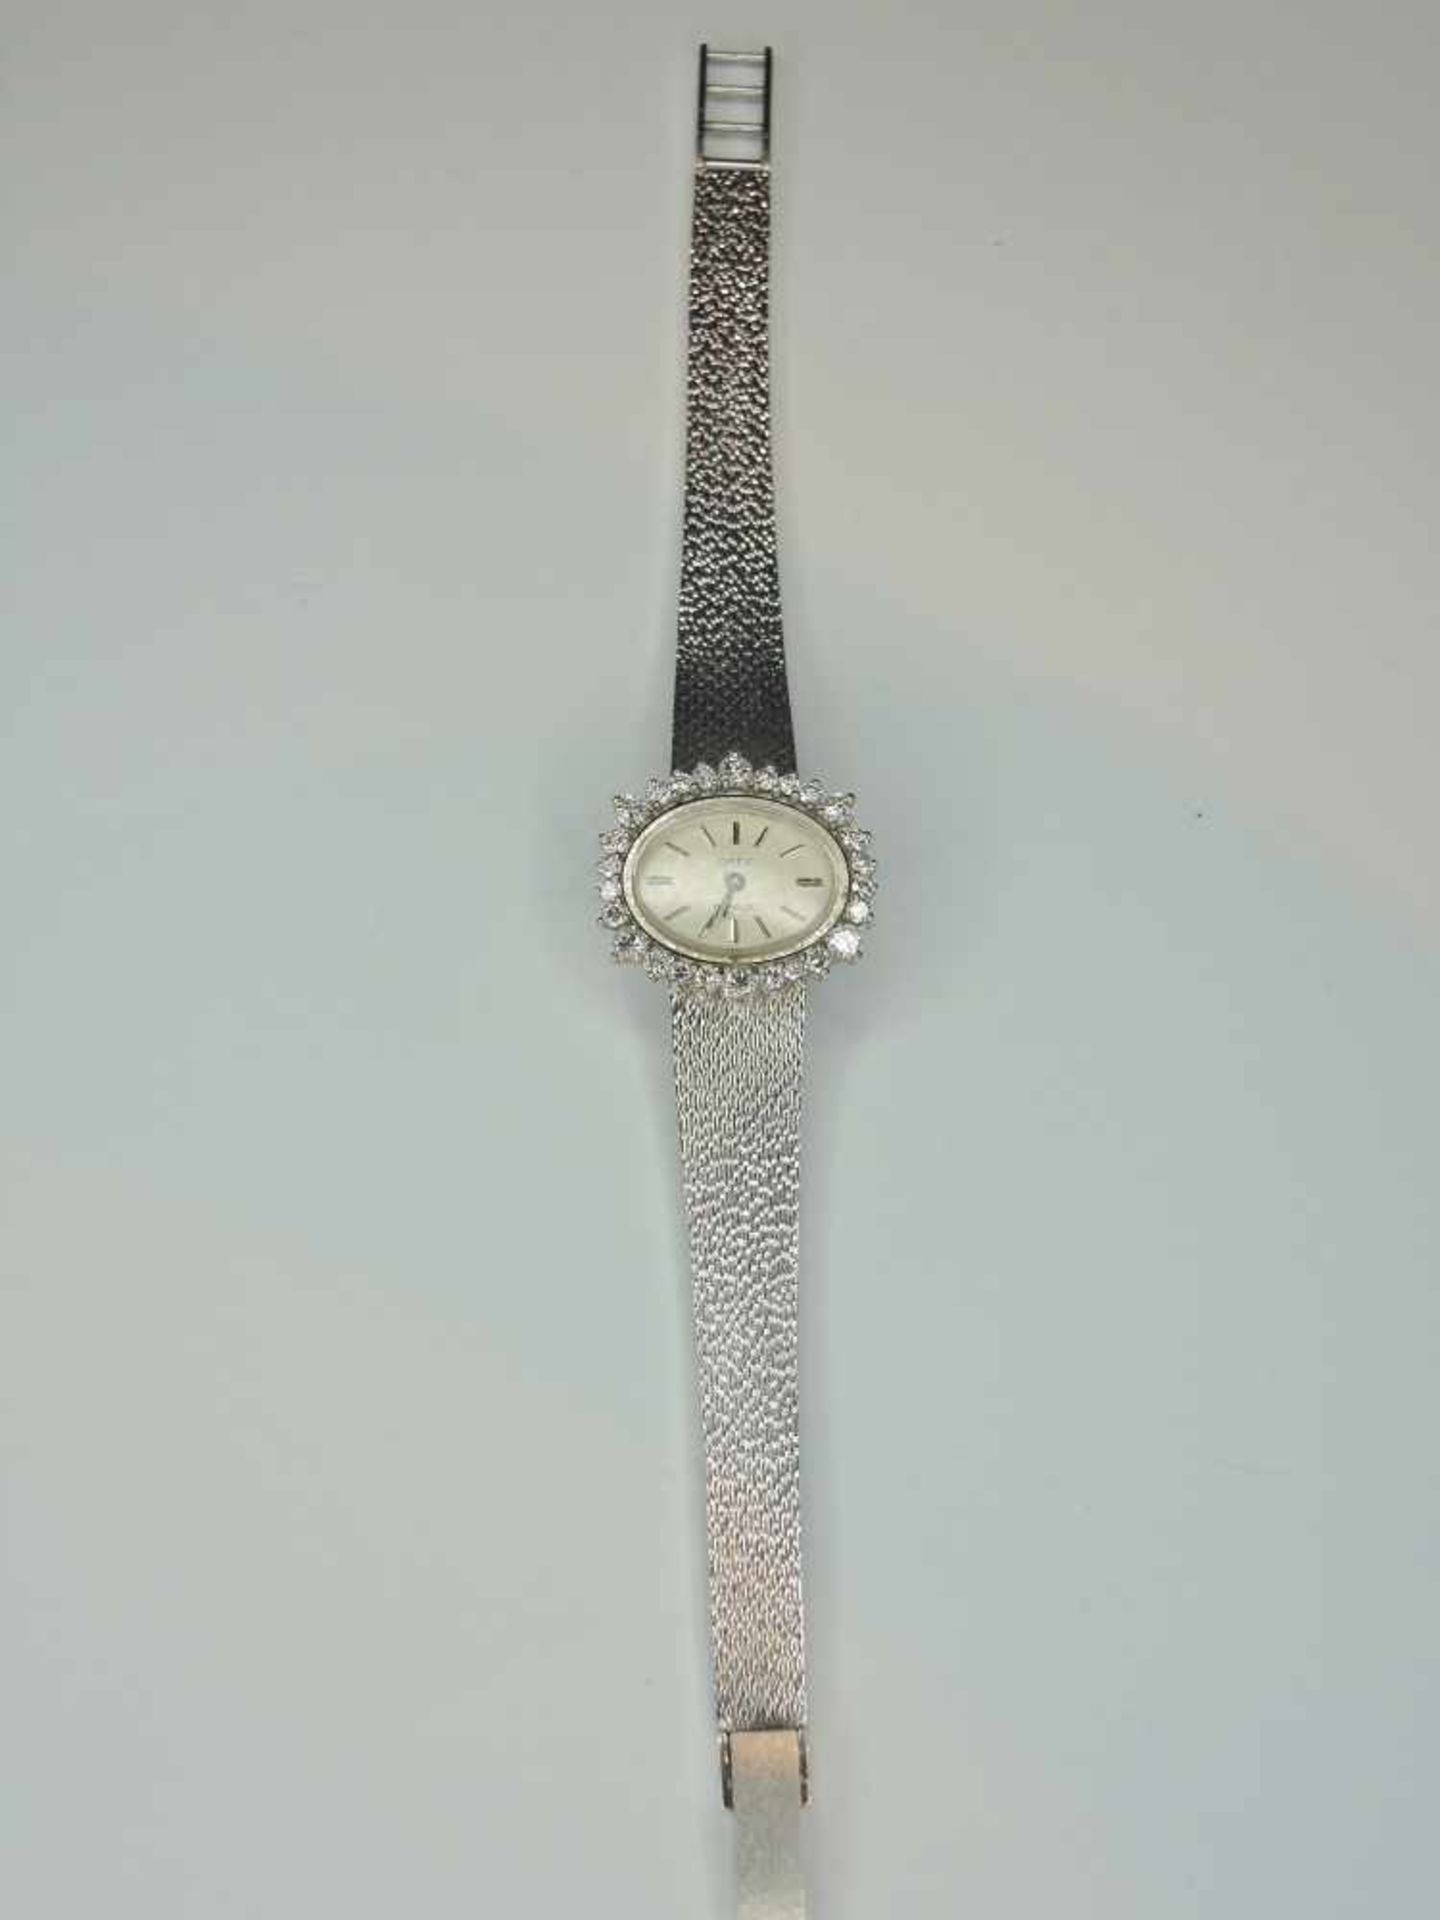 Orex, Damen-Armbanduhr18 K. Weißgold, besetzt mit Brillanten von ca. 1 ct. Handaufzug, gangbar.